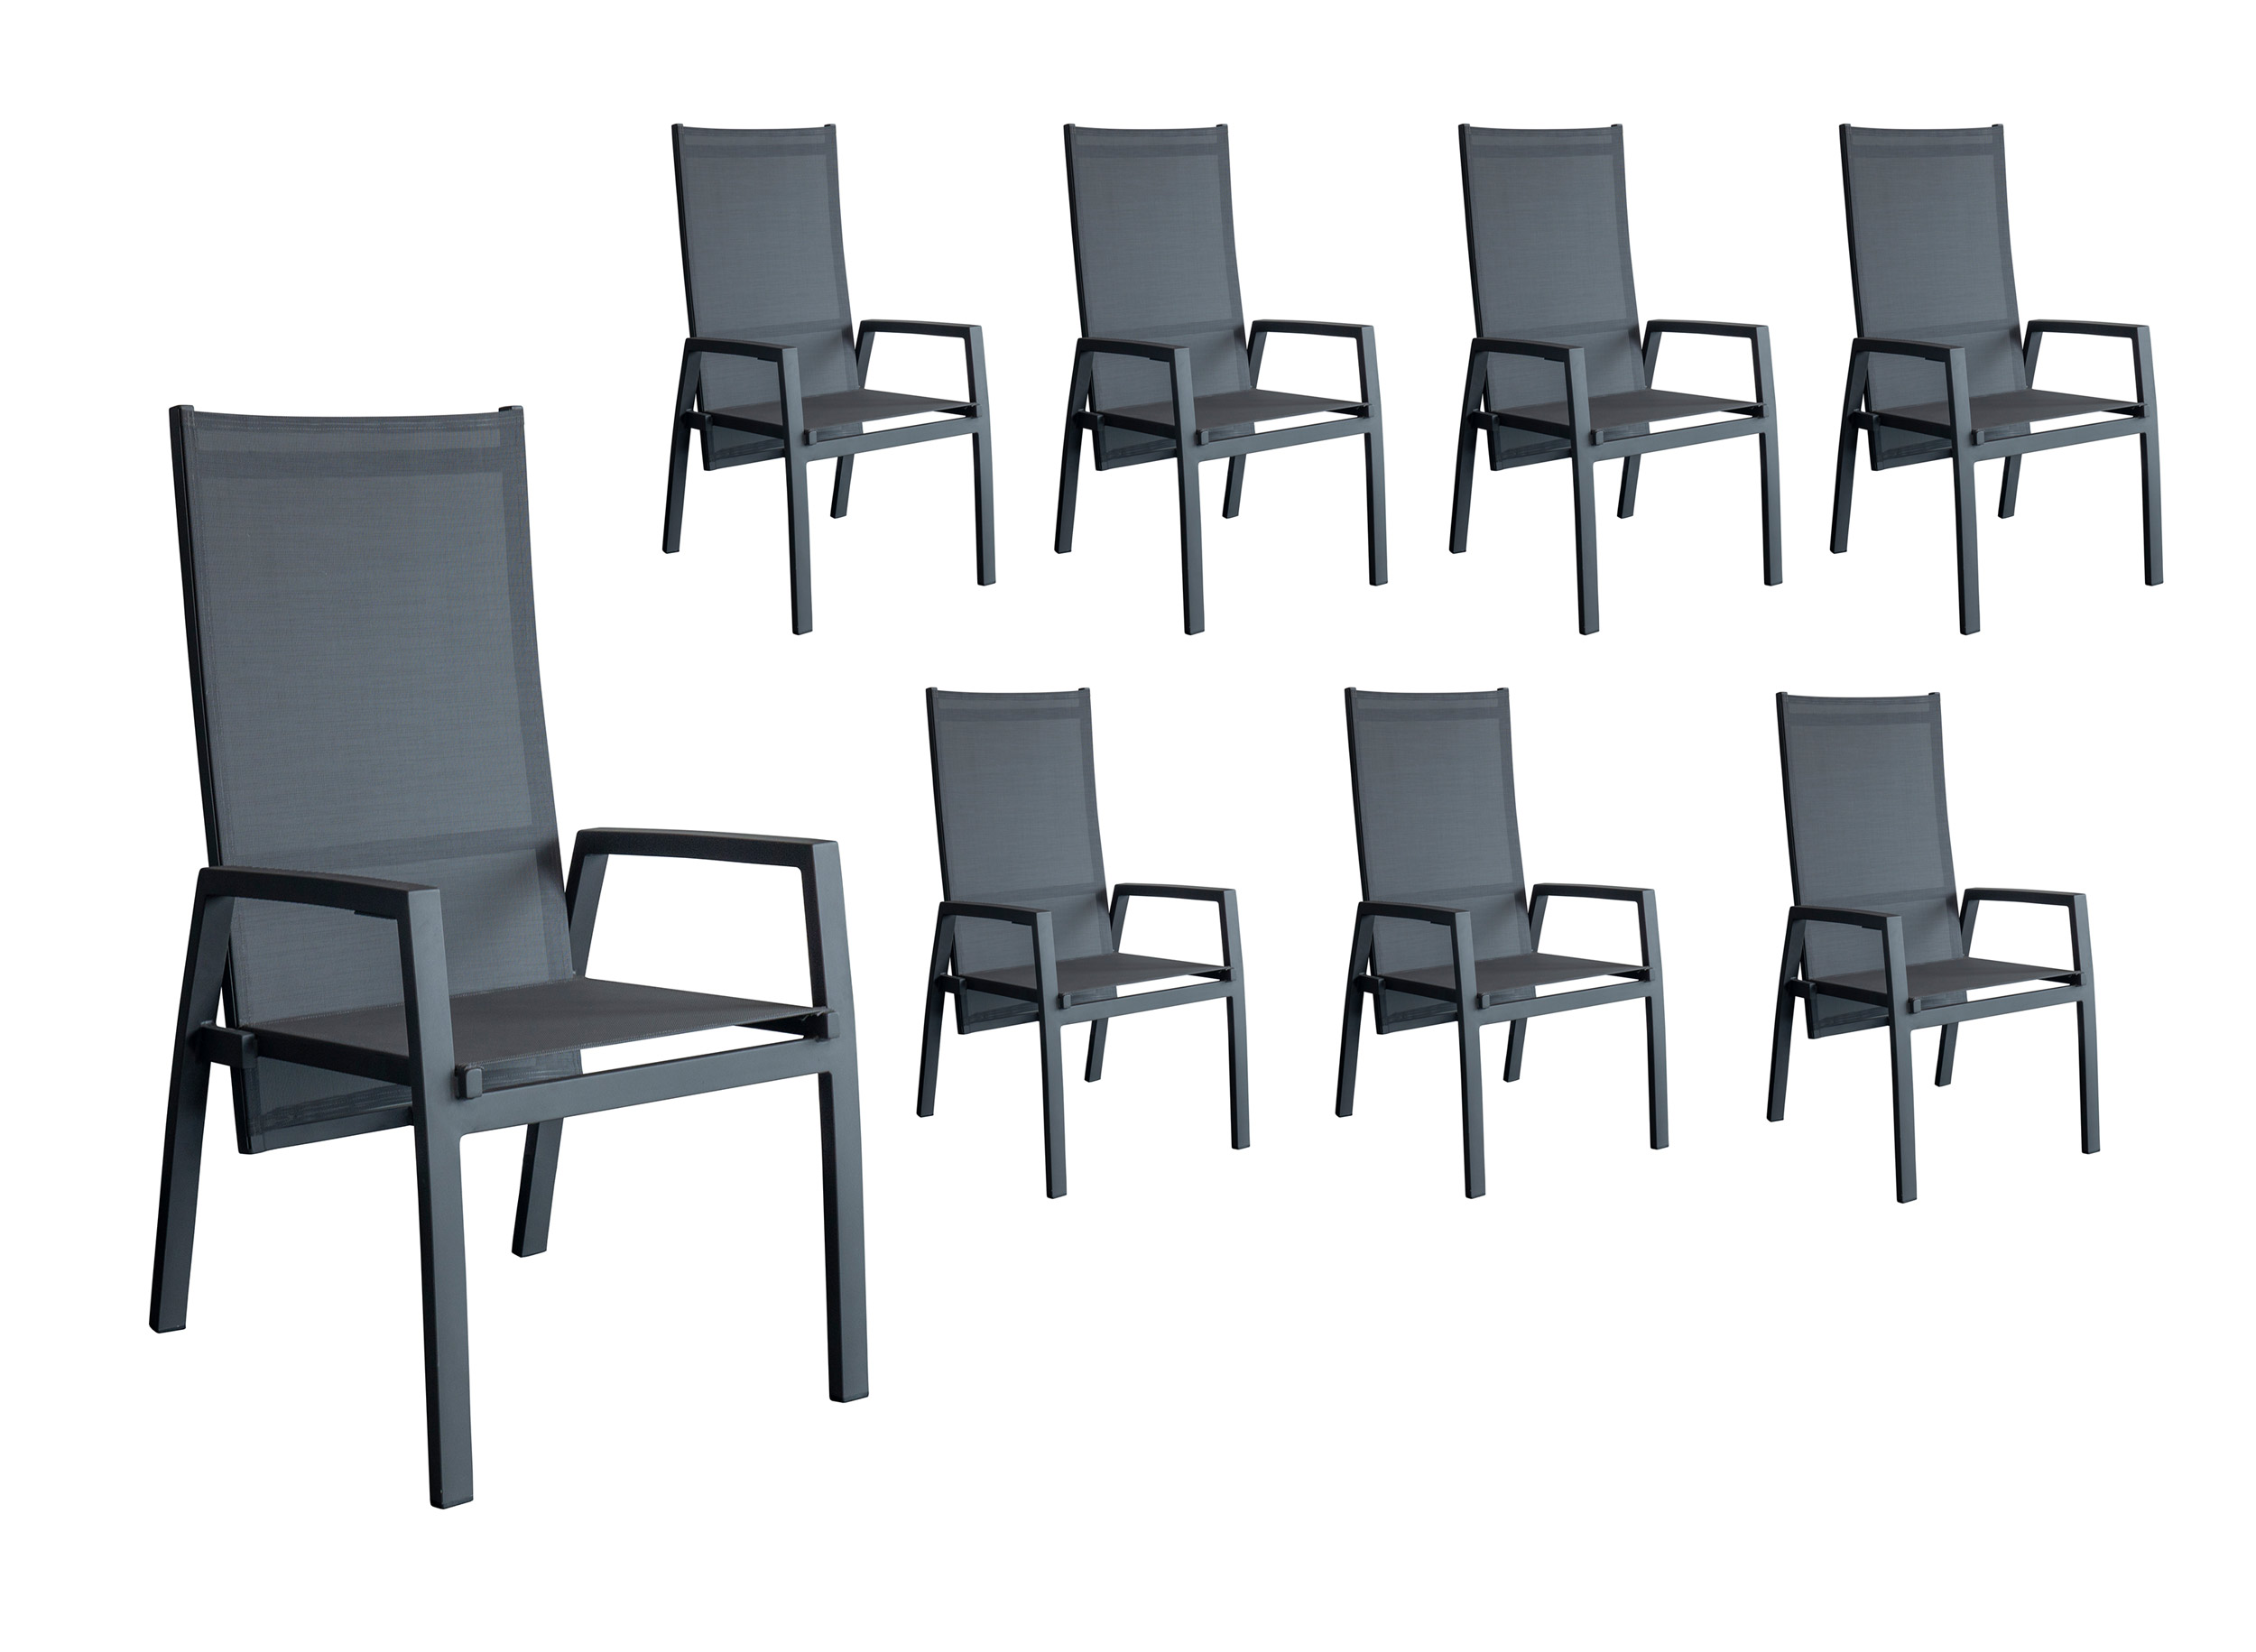 LC Garden »Bondino« Dining 8er Set Positionsstuhl Verstellsessel Textilien grau